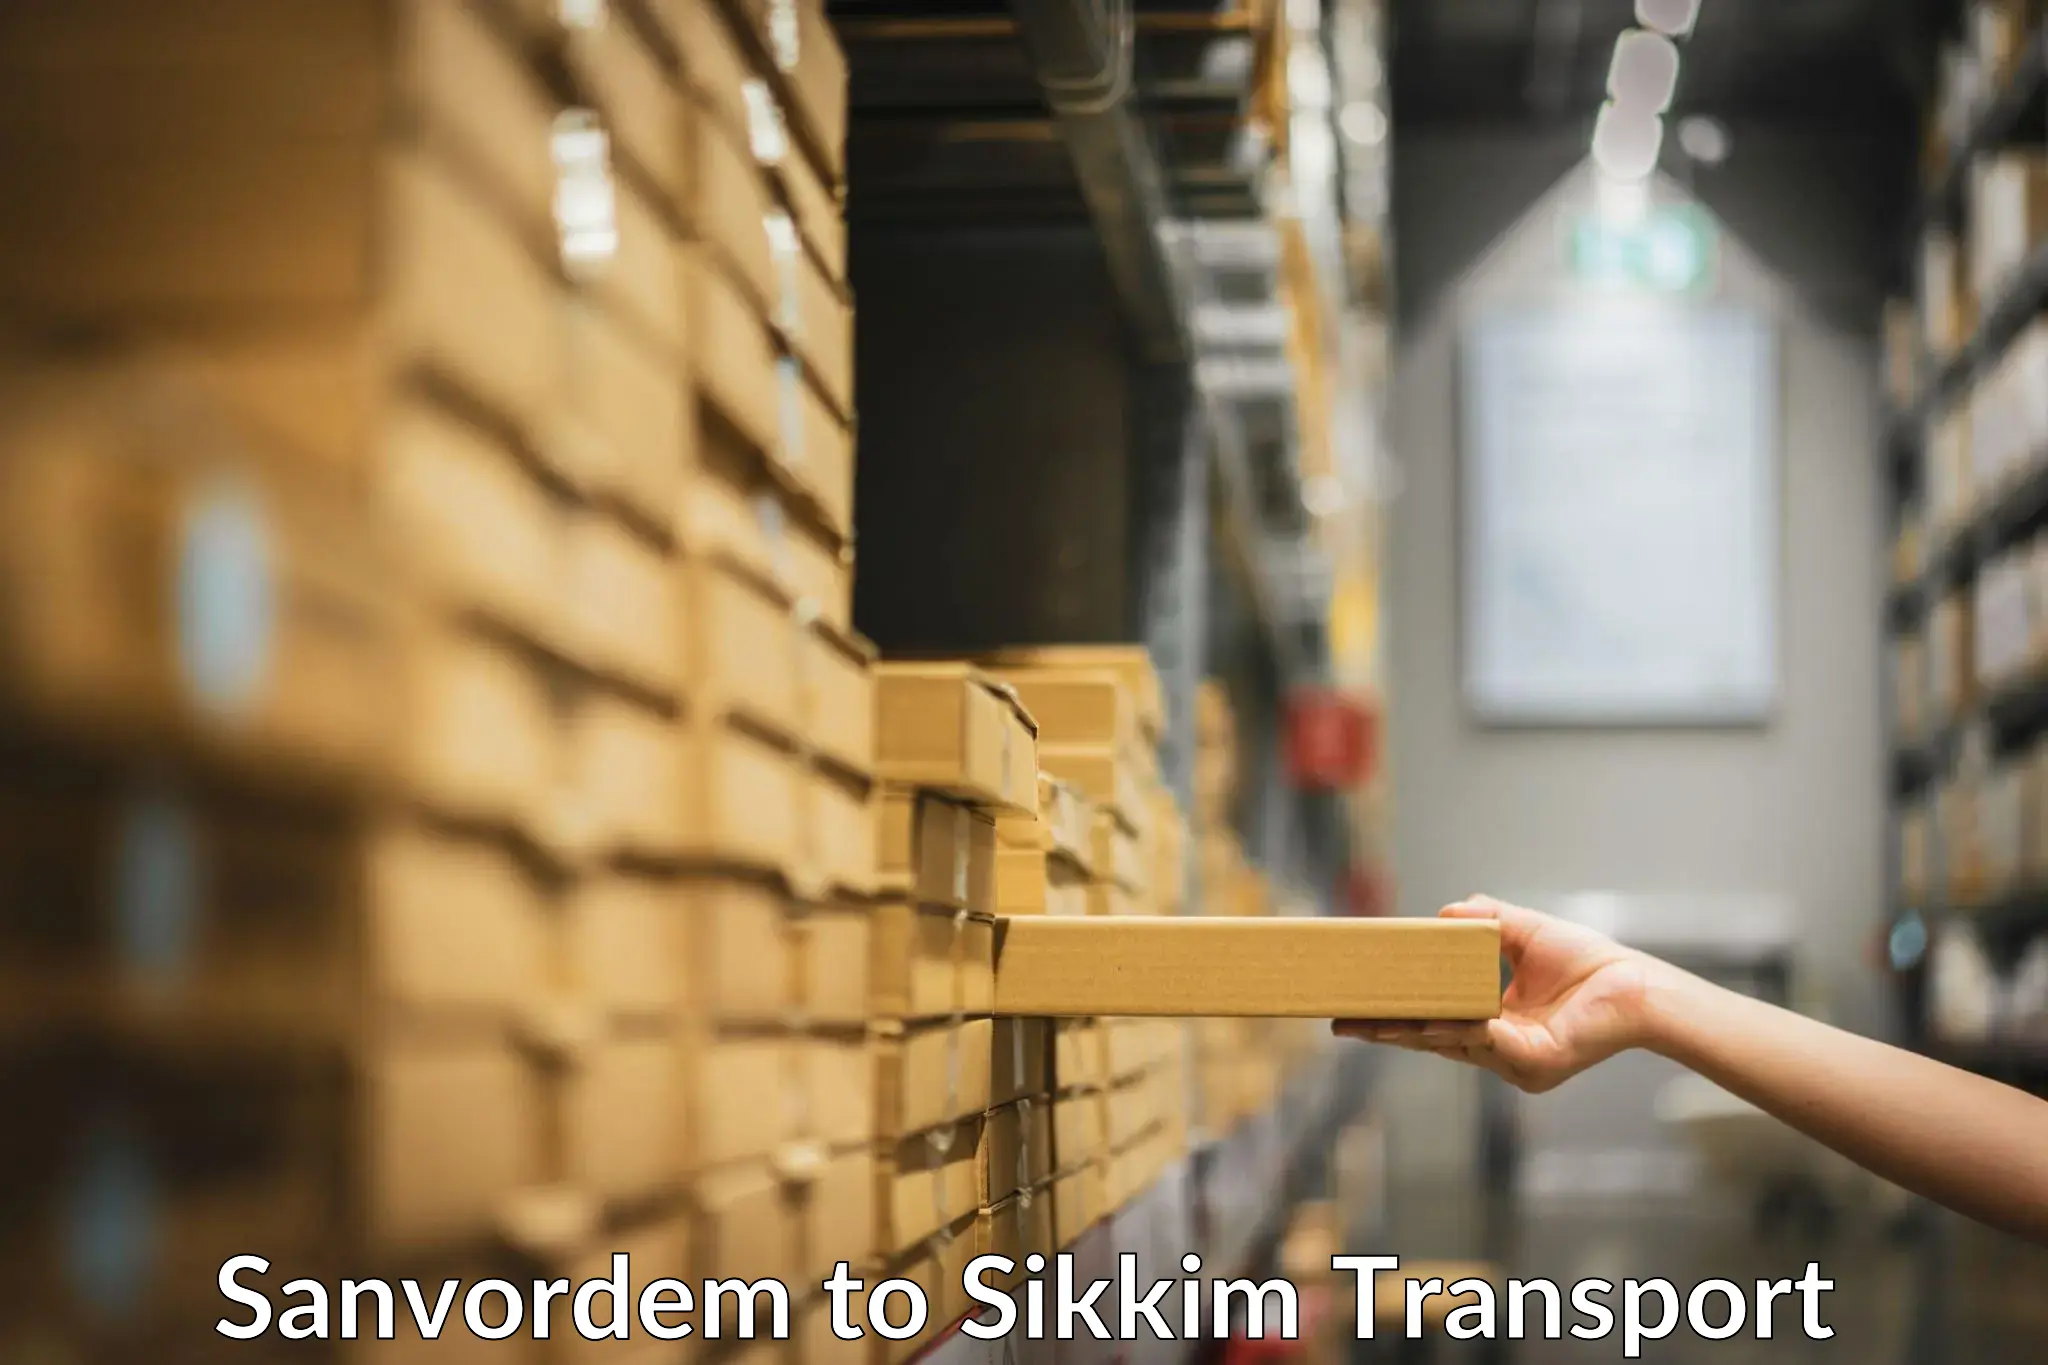 Daily parcel service transport Sanvordem to East Sikkim